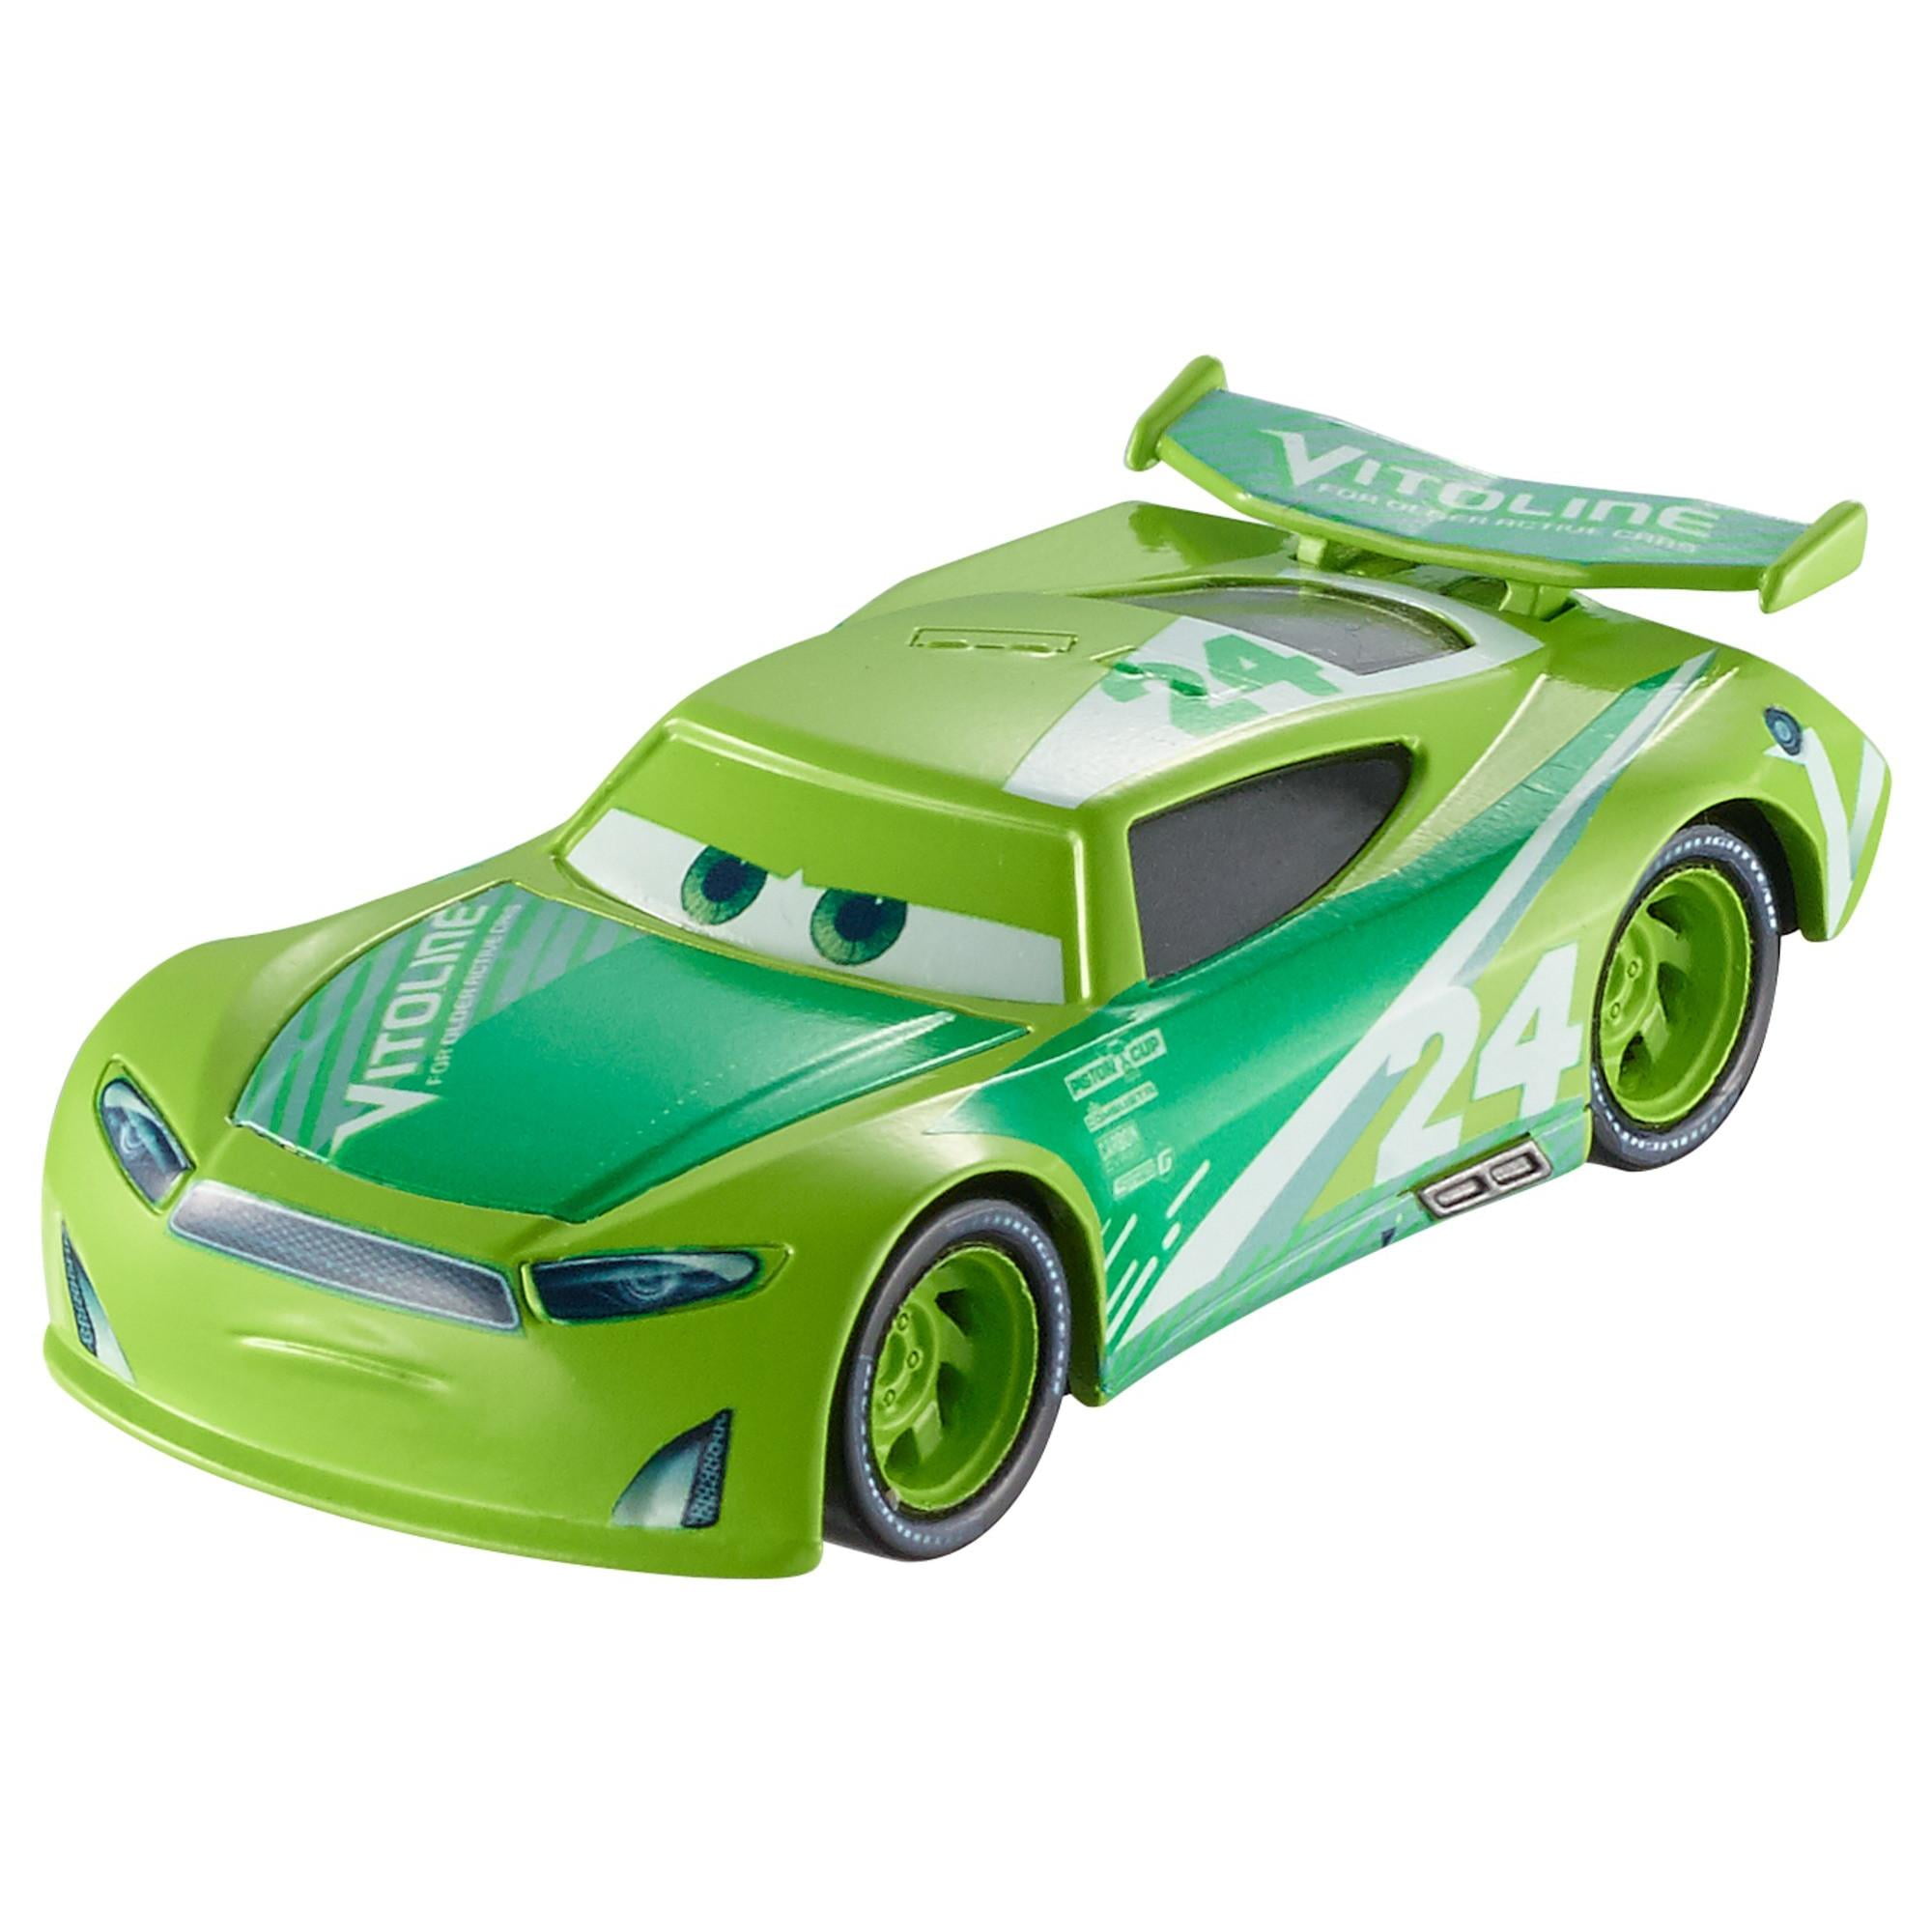 Деньги машины тачки. Cars 3 Mattel next-Gen Racers. Disney Pixar cars 3 игрушки. Тачки 3 машинка Чейс Рейслотт. Тачки 3 гонщики Томасвиля.